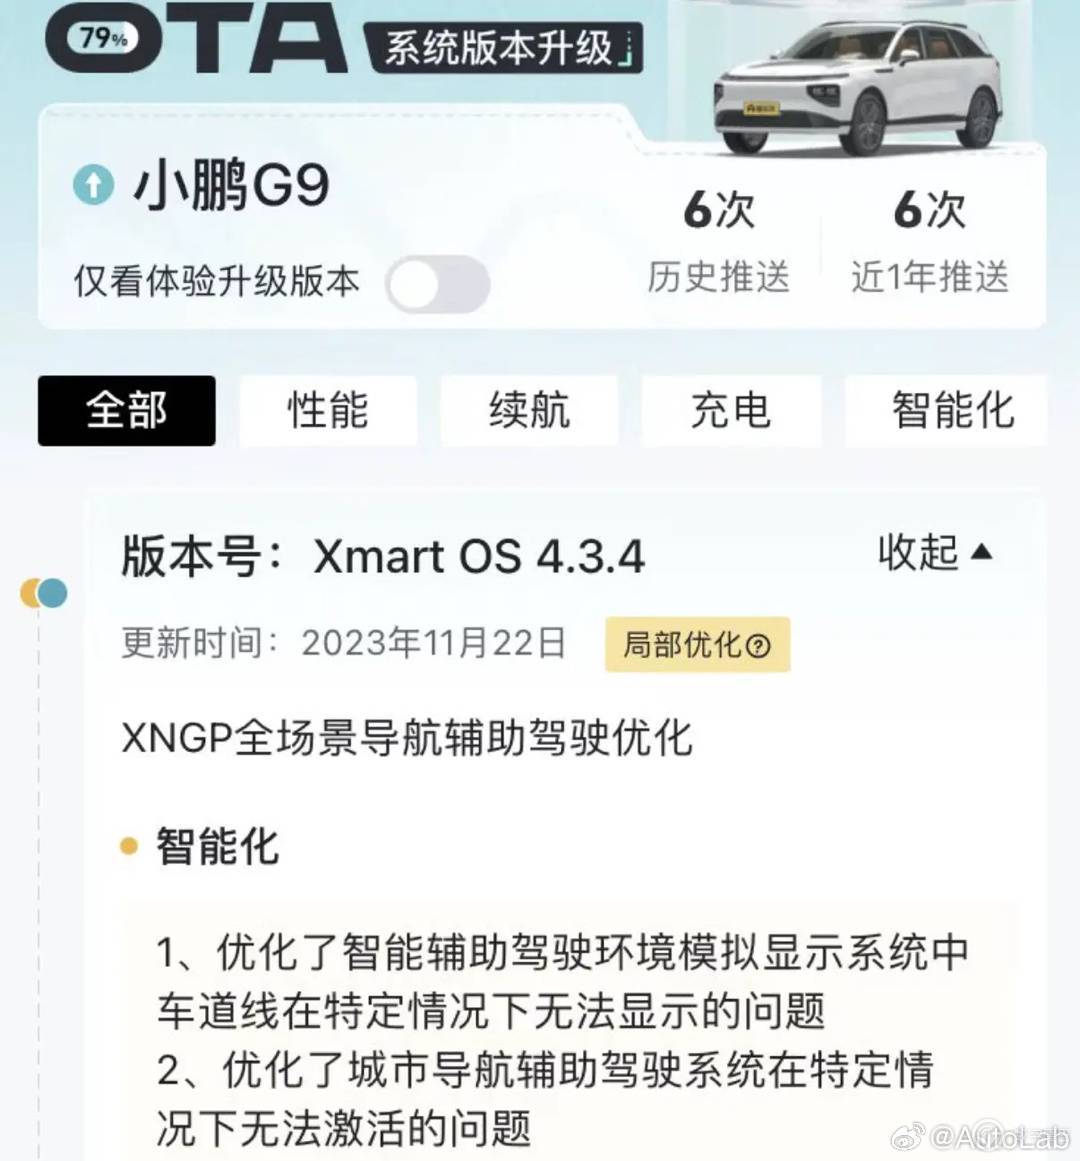 【愛車基地】小鵬 G9 OTA 升級 Xmart OS 4.3.4，XNGP 全場景導航輔助駕駛優化-第2張